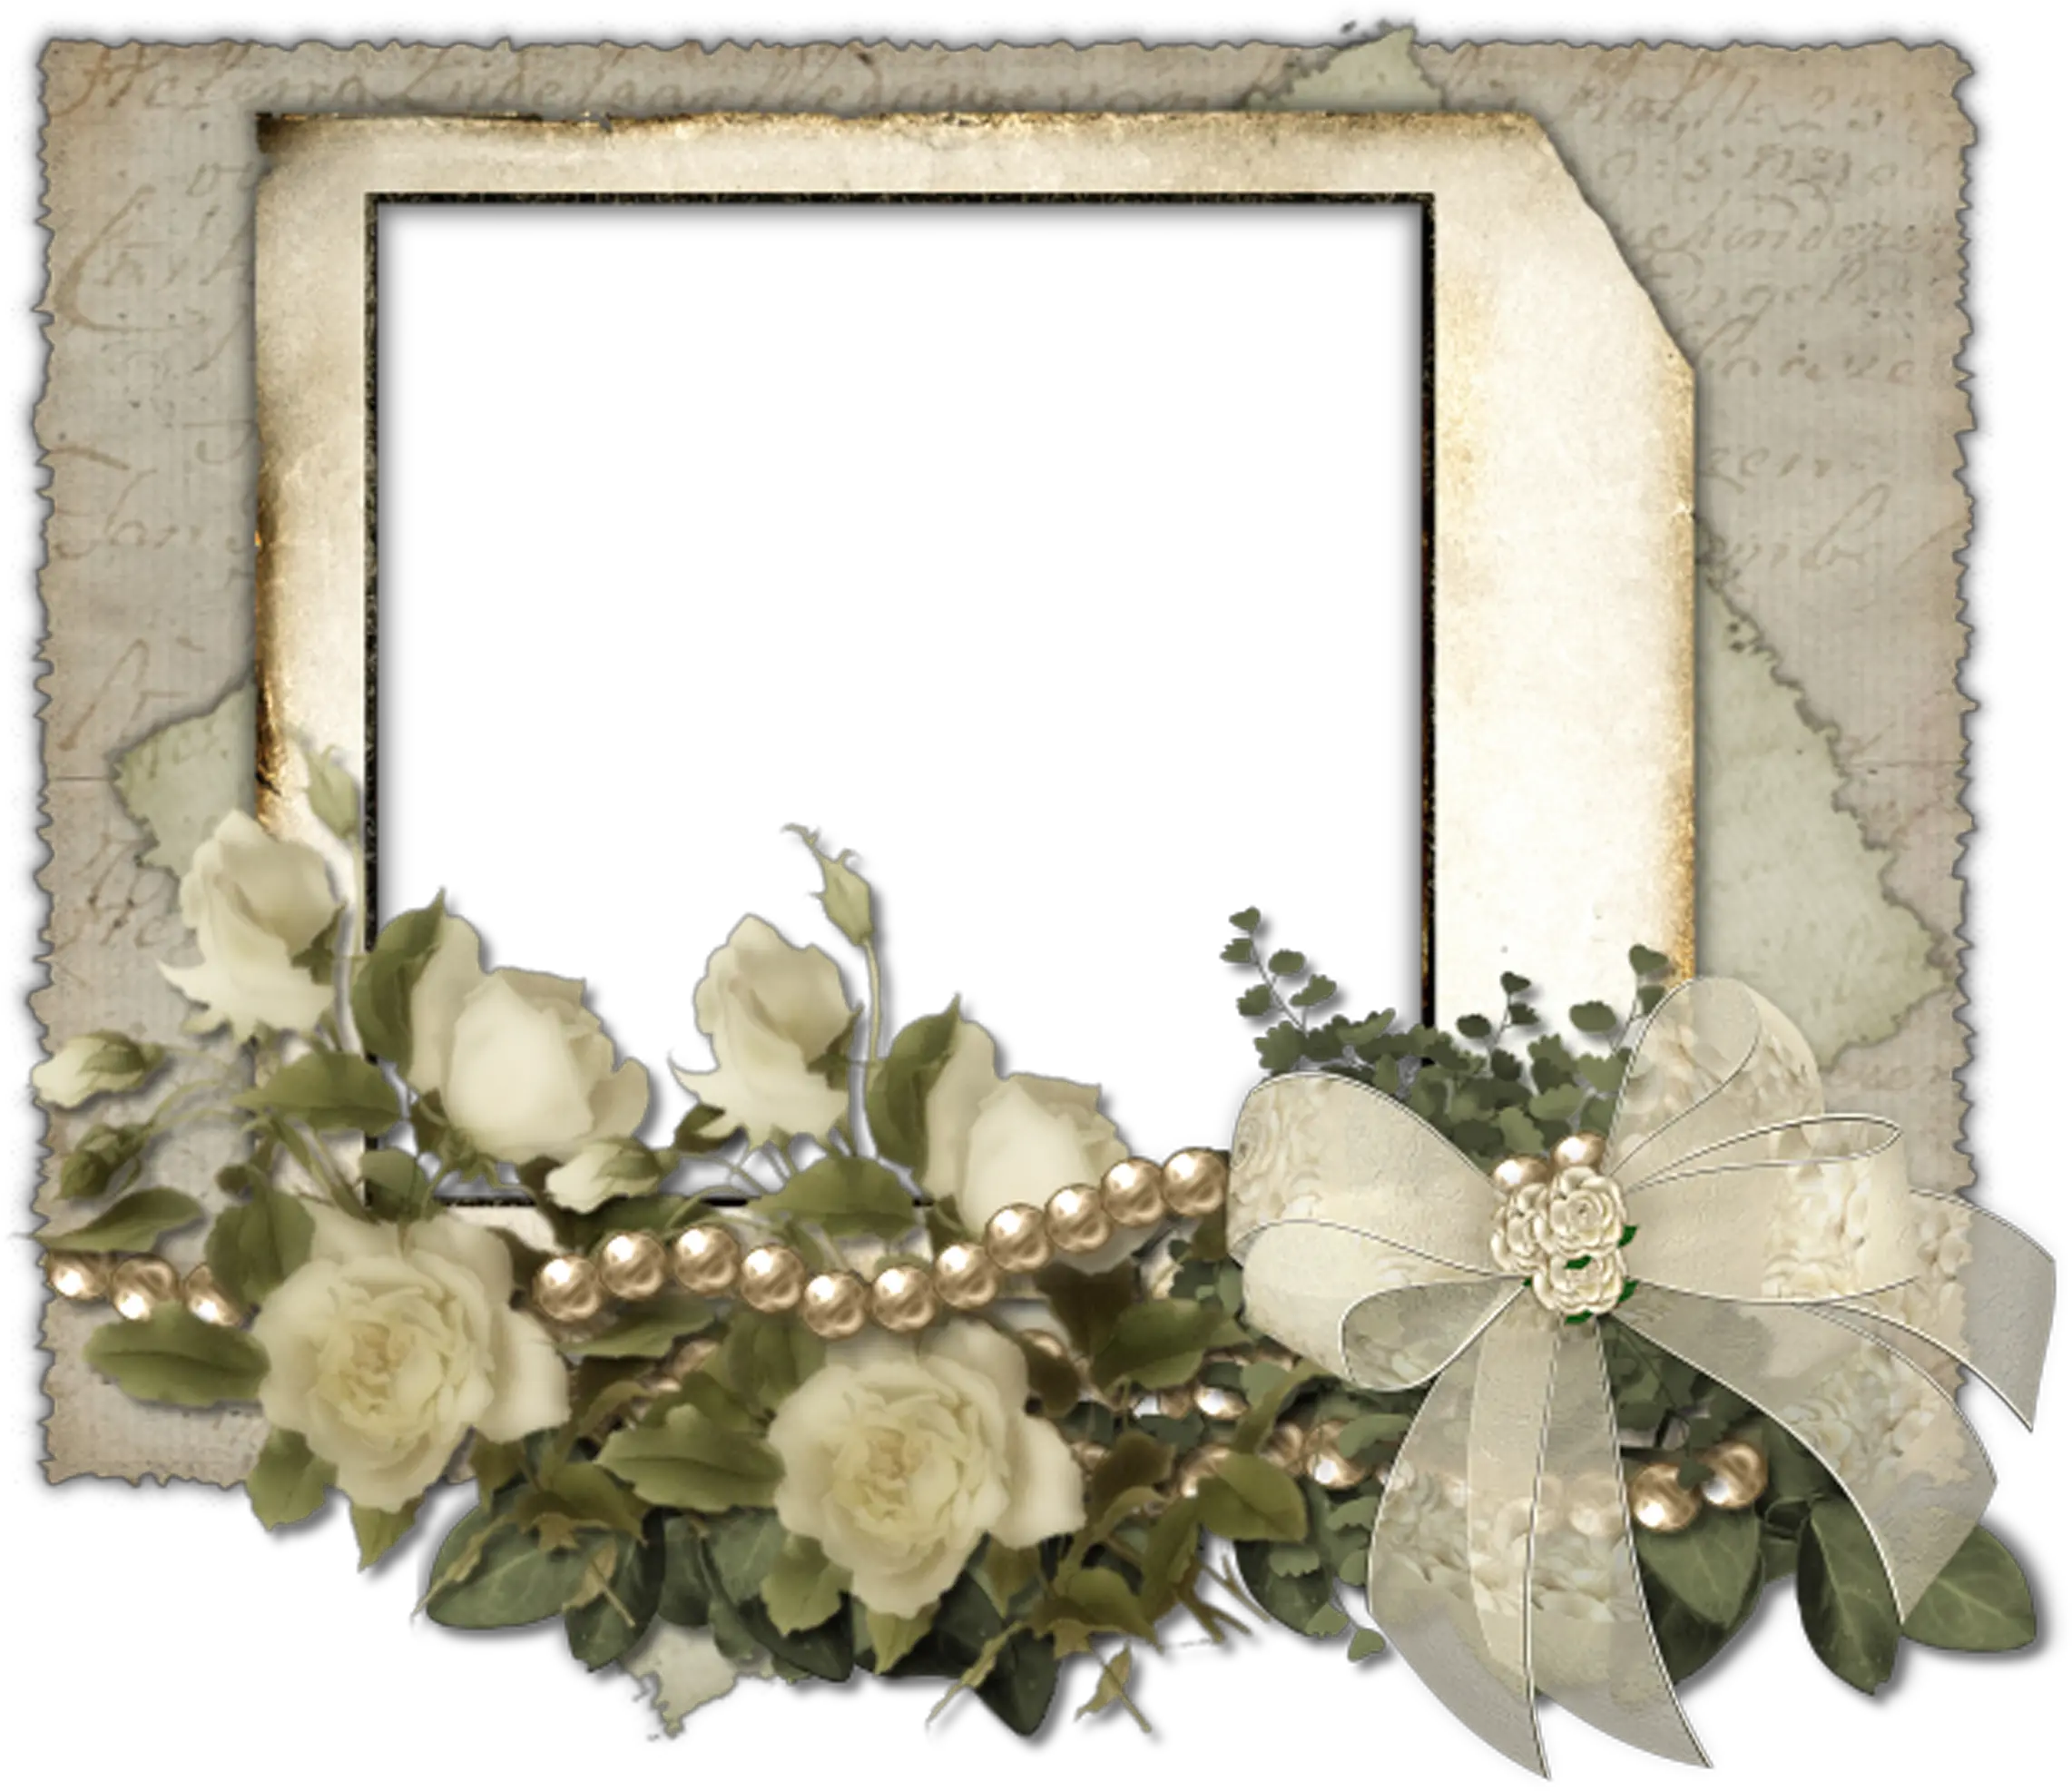 Flower Download Free Image Hq Png Garden Roses Elegant Frame Png